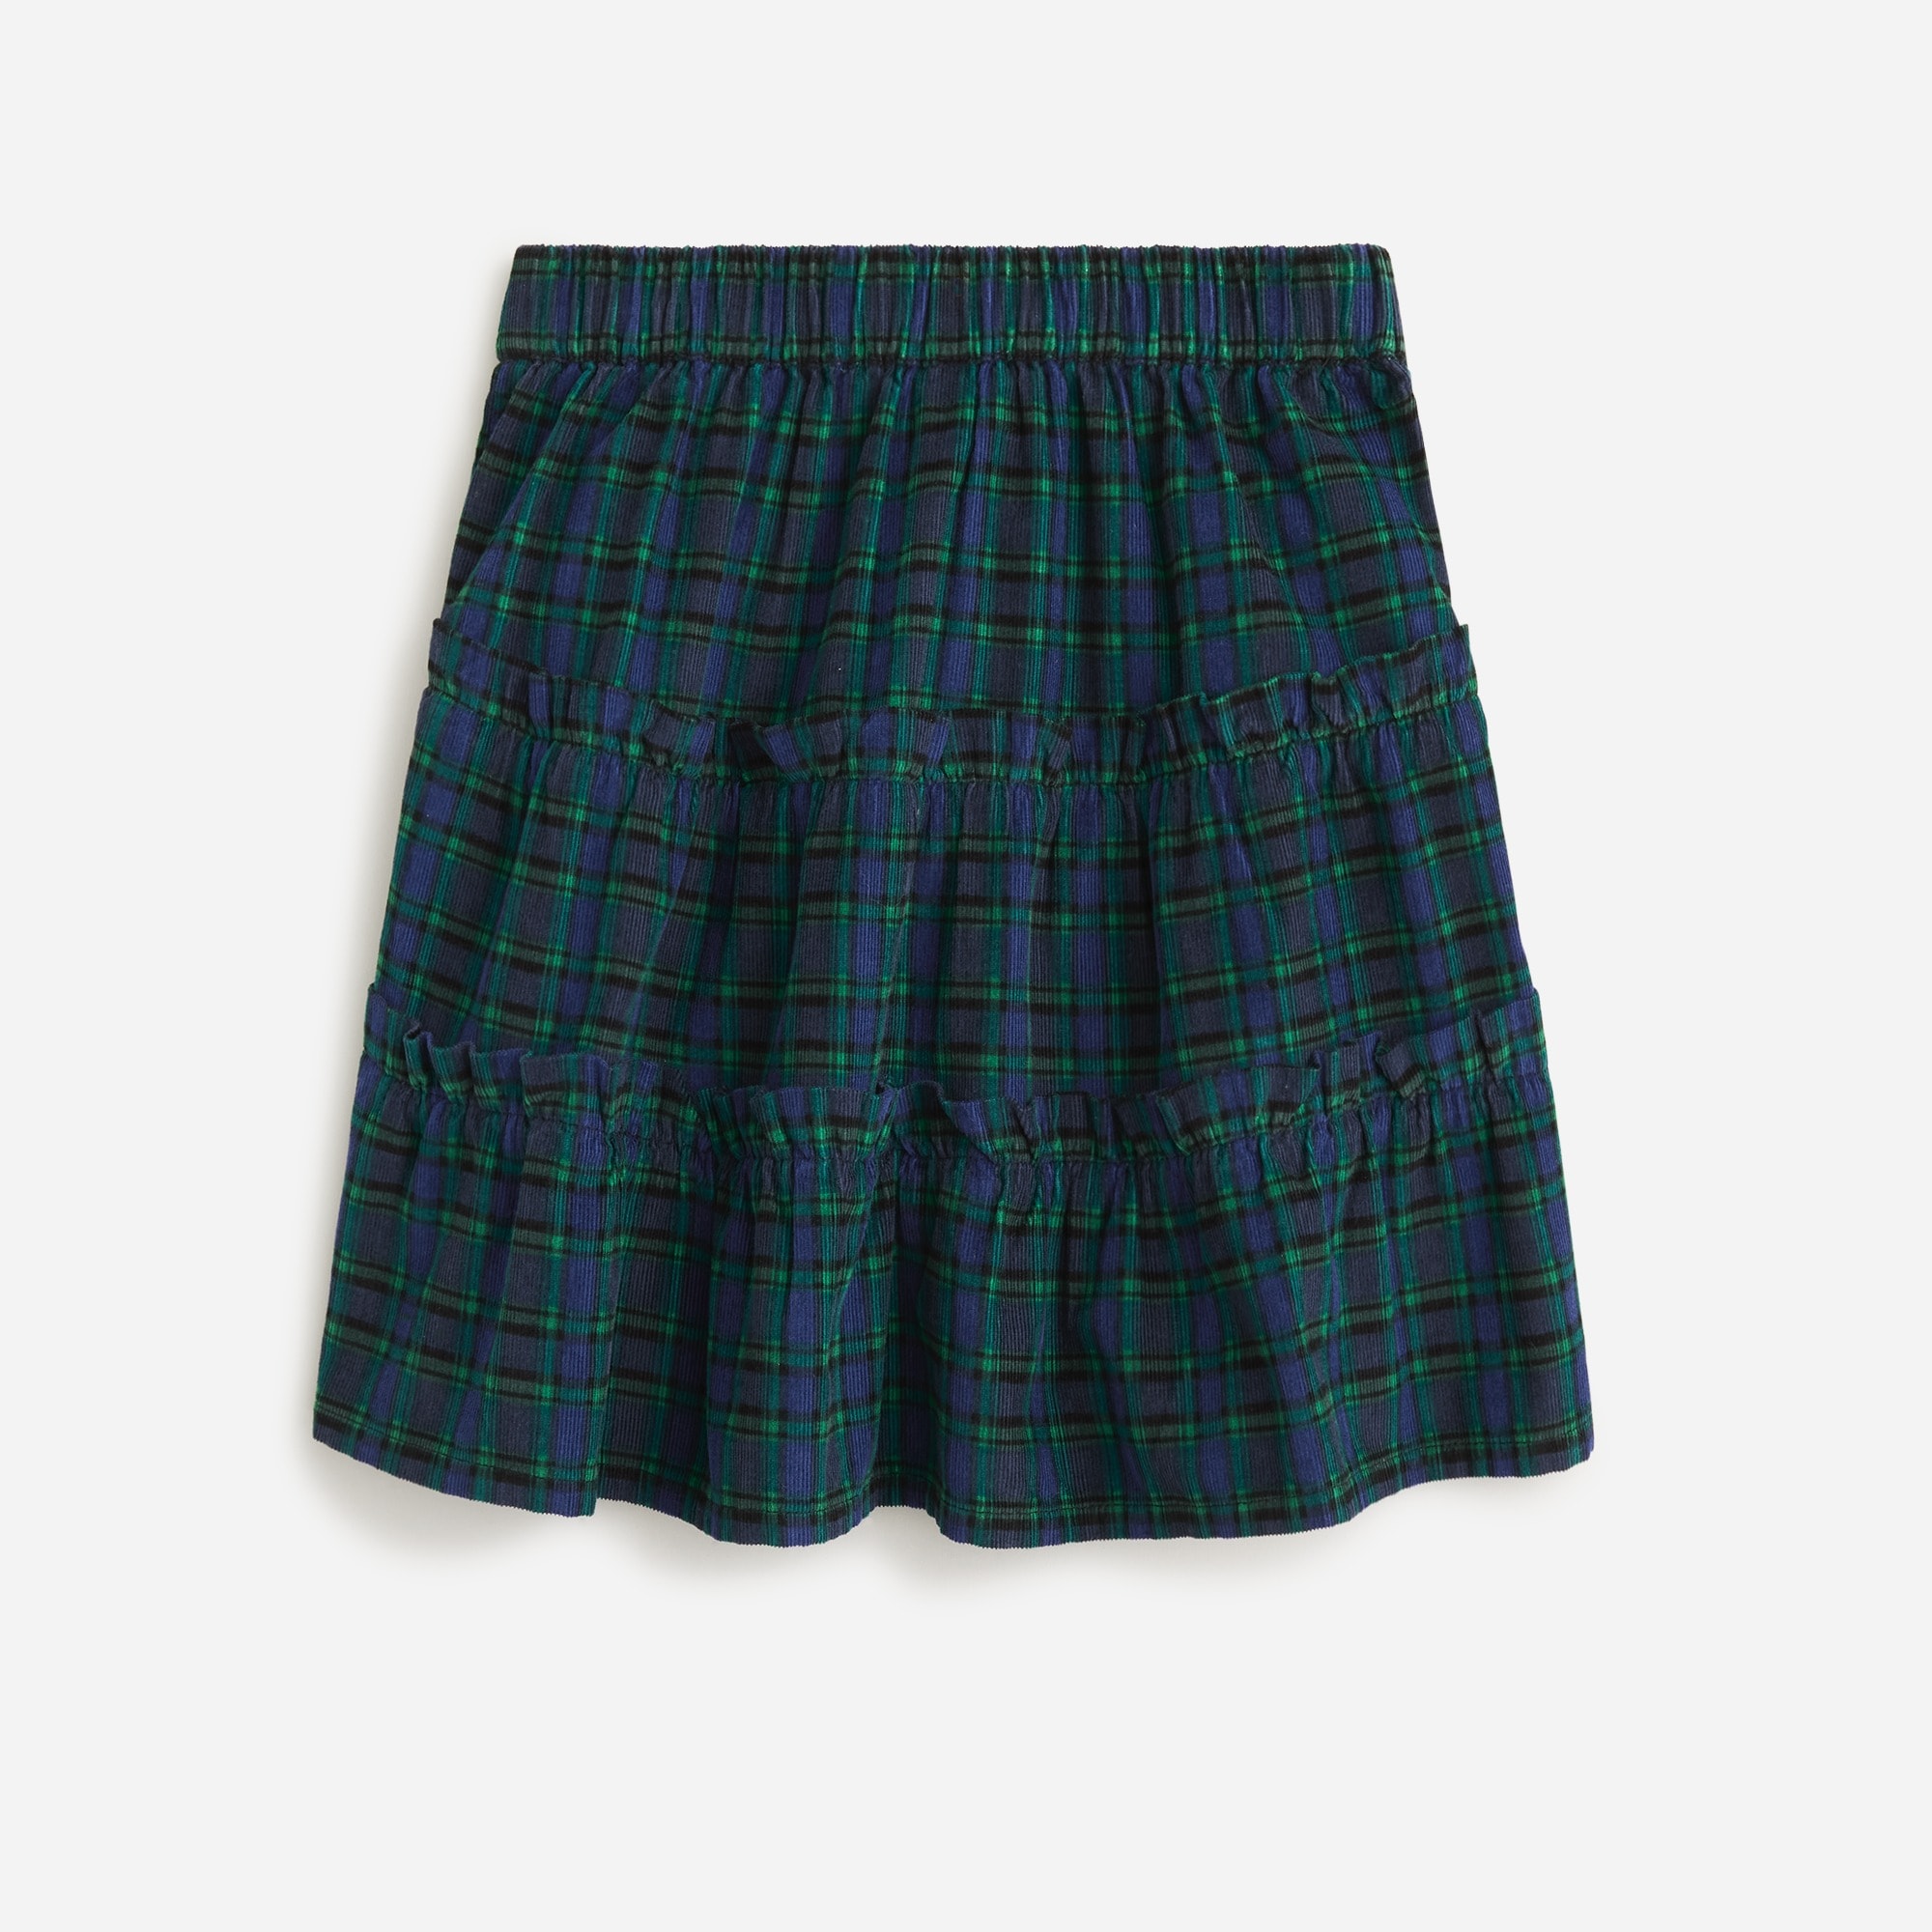  Girls' ruffle skirt in plaid corduroy